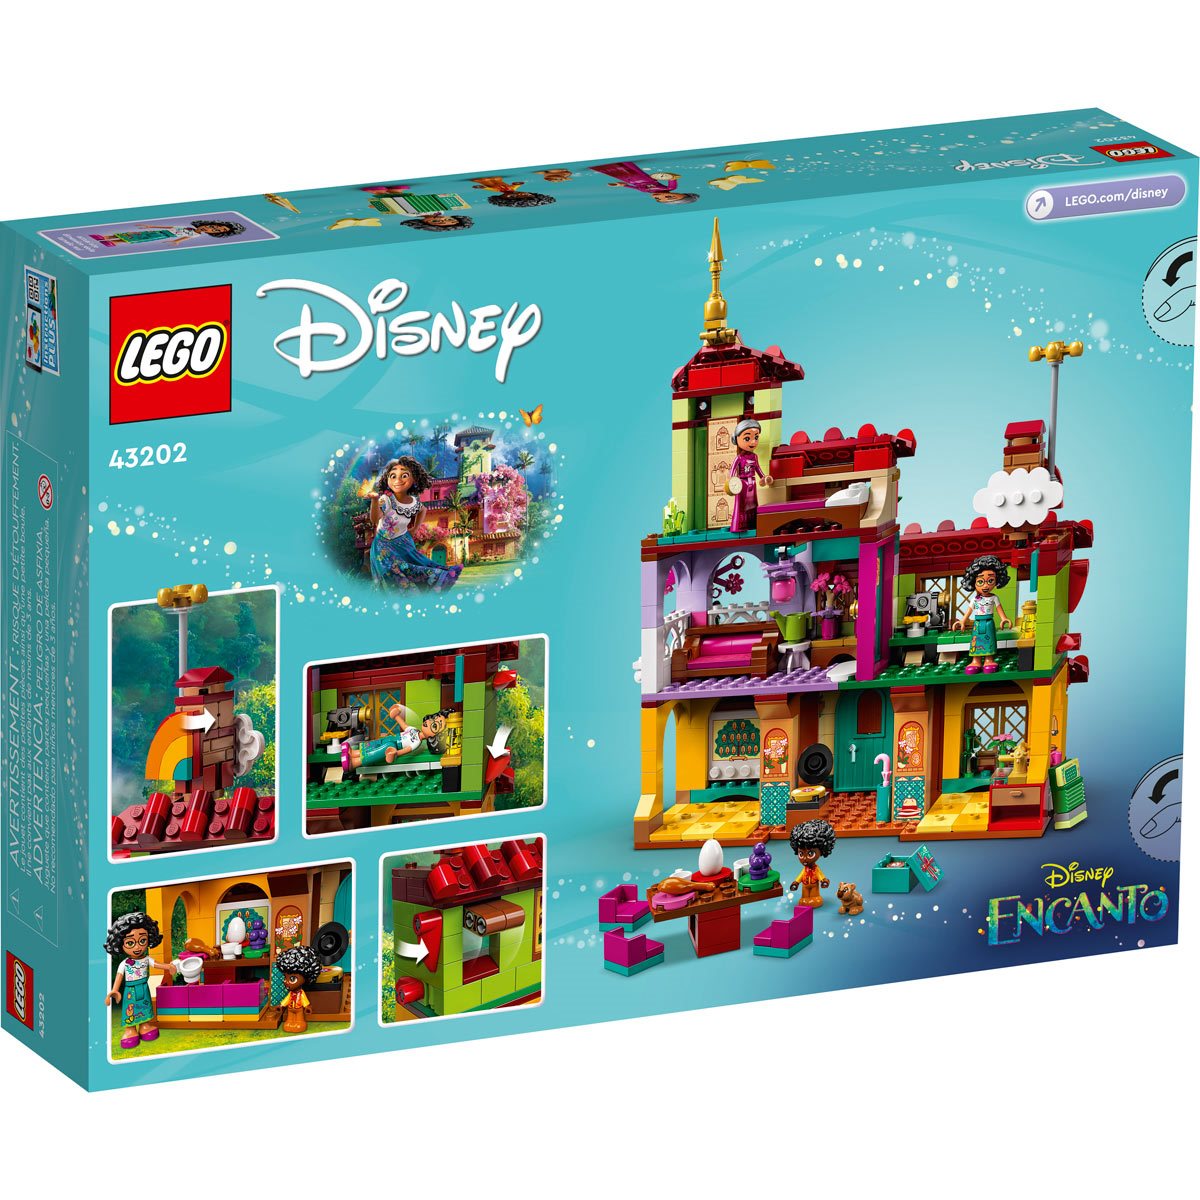 LEGO 43202 Disney Princess House